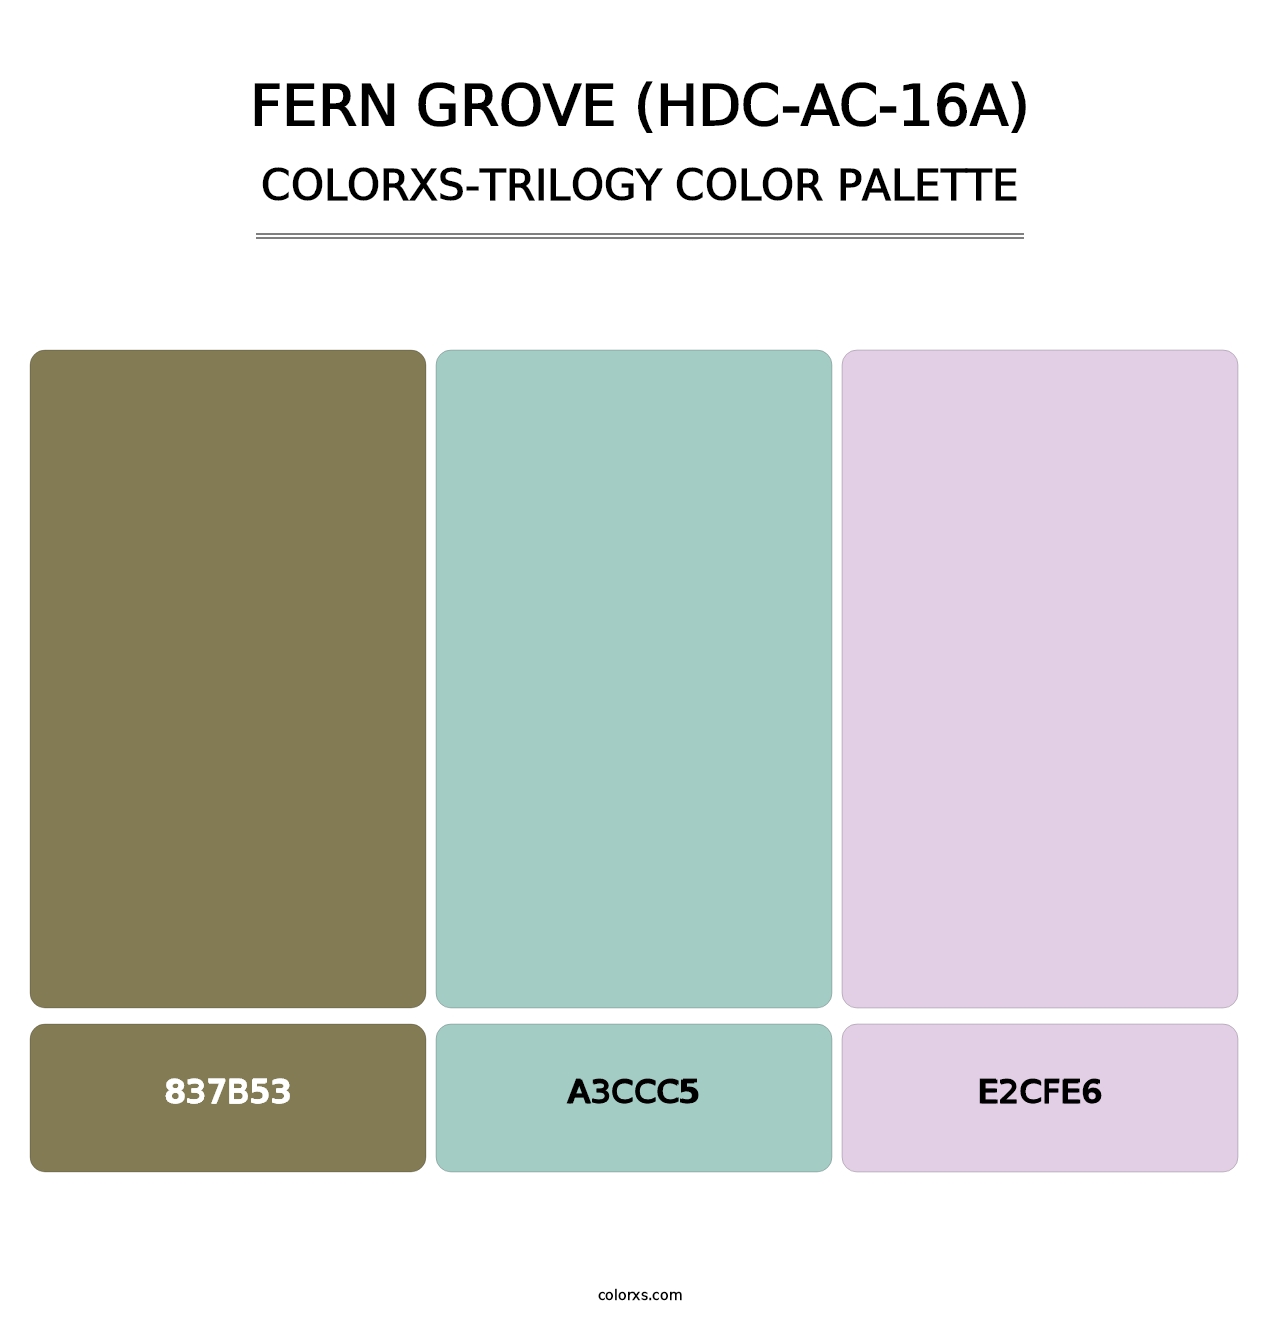 Fern Grove (HDC-AC-16A) - Colorxs Trilogy Palette